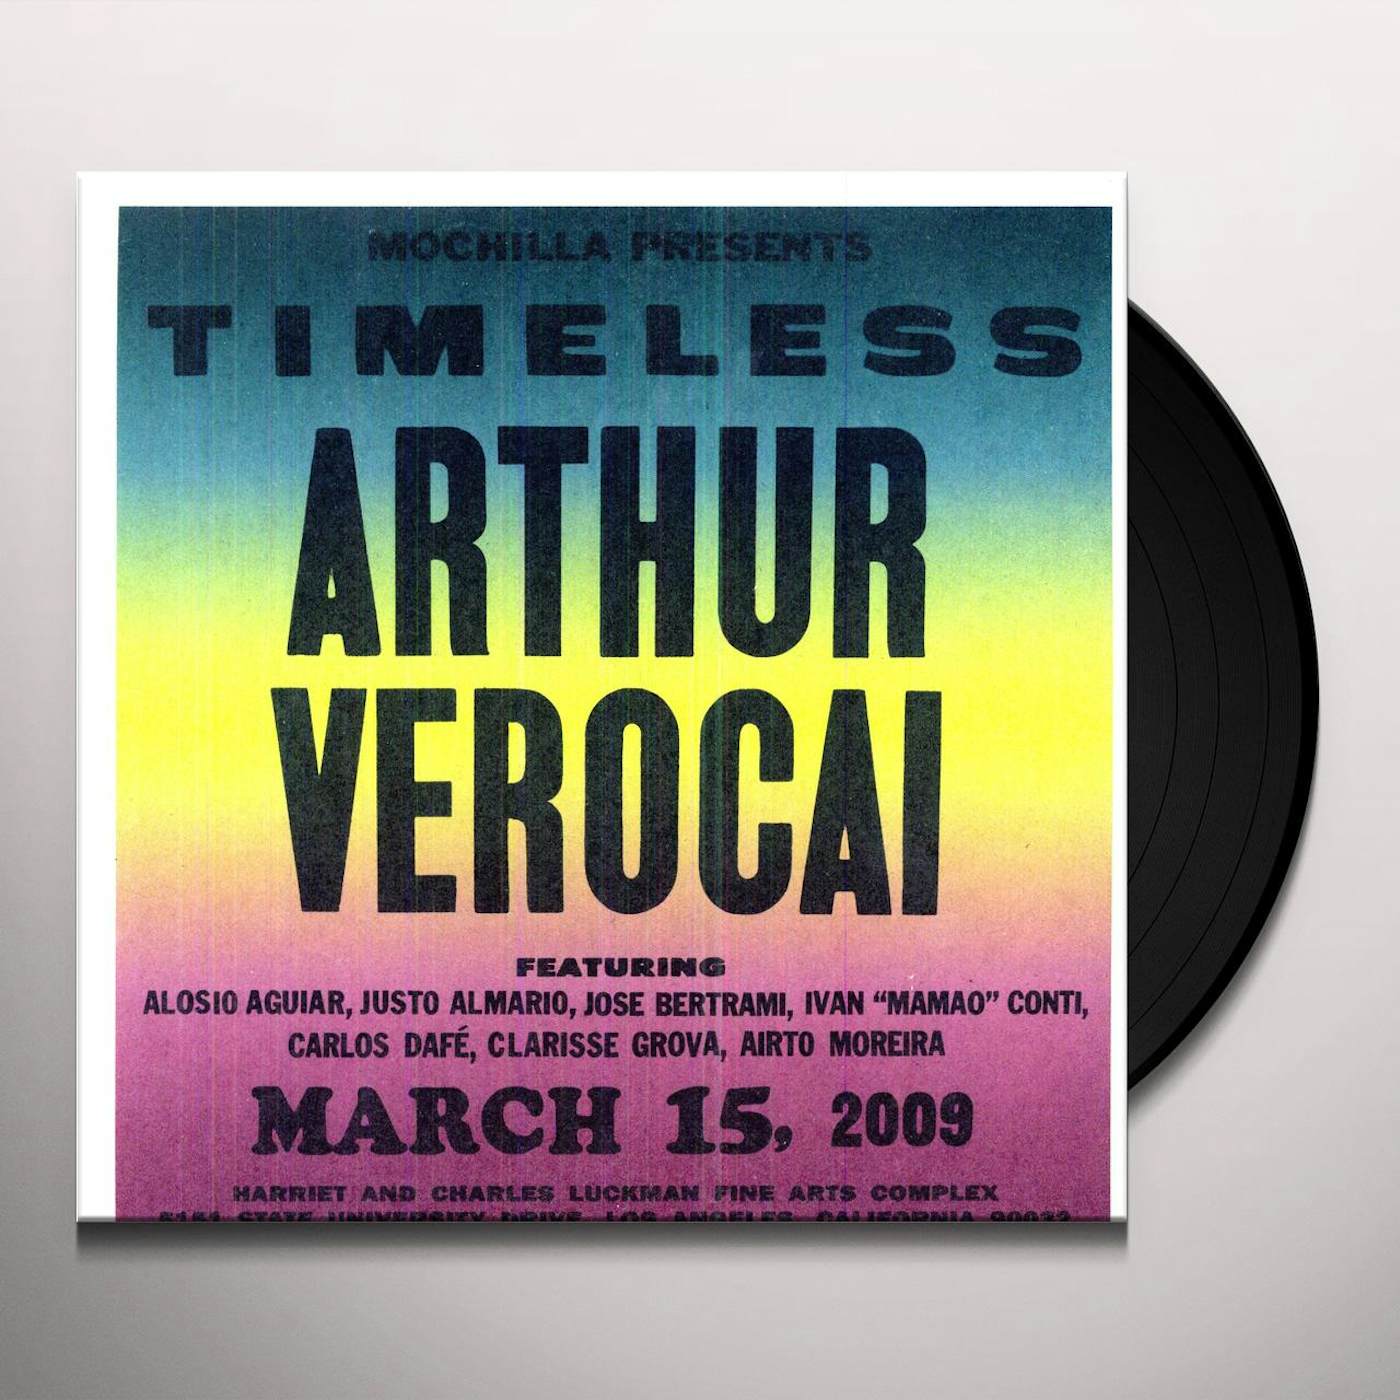 Verocai Arthur: Timeless: Arthur Verocai